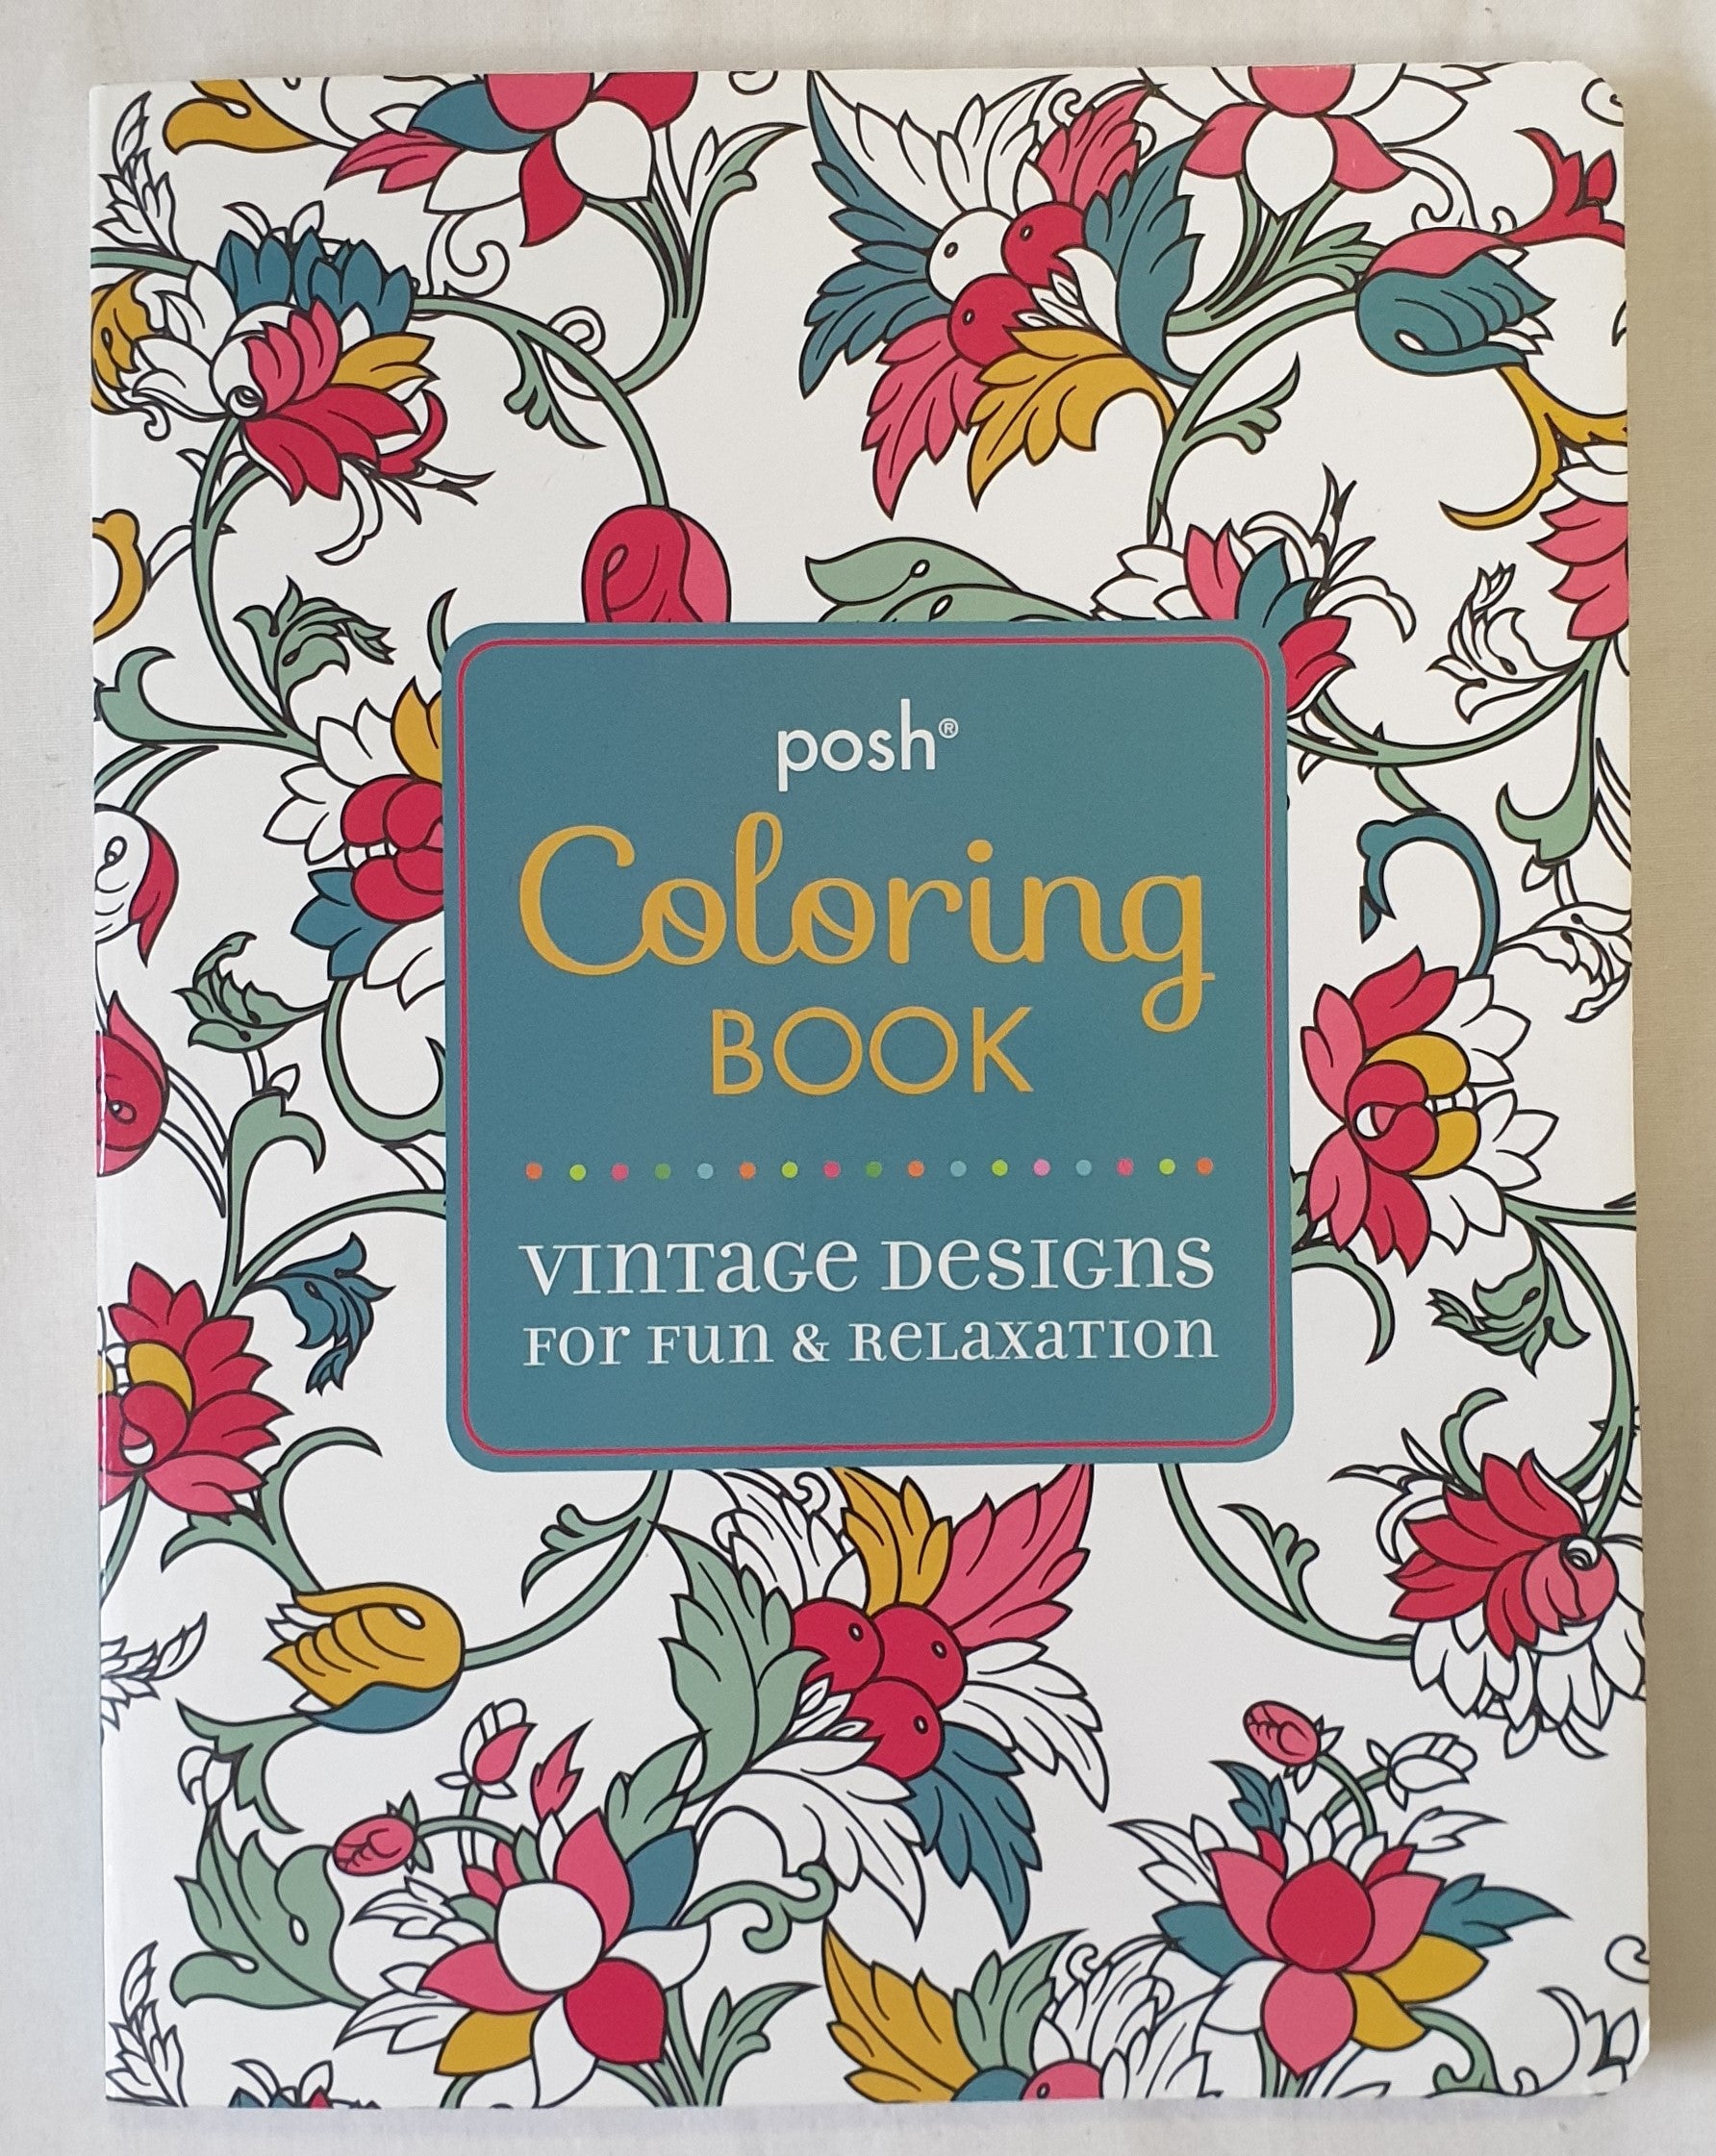 Posh Coloring Book by Michael O’Mara Books